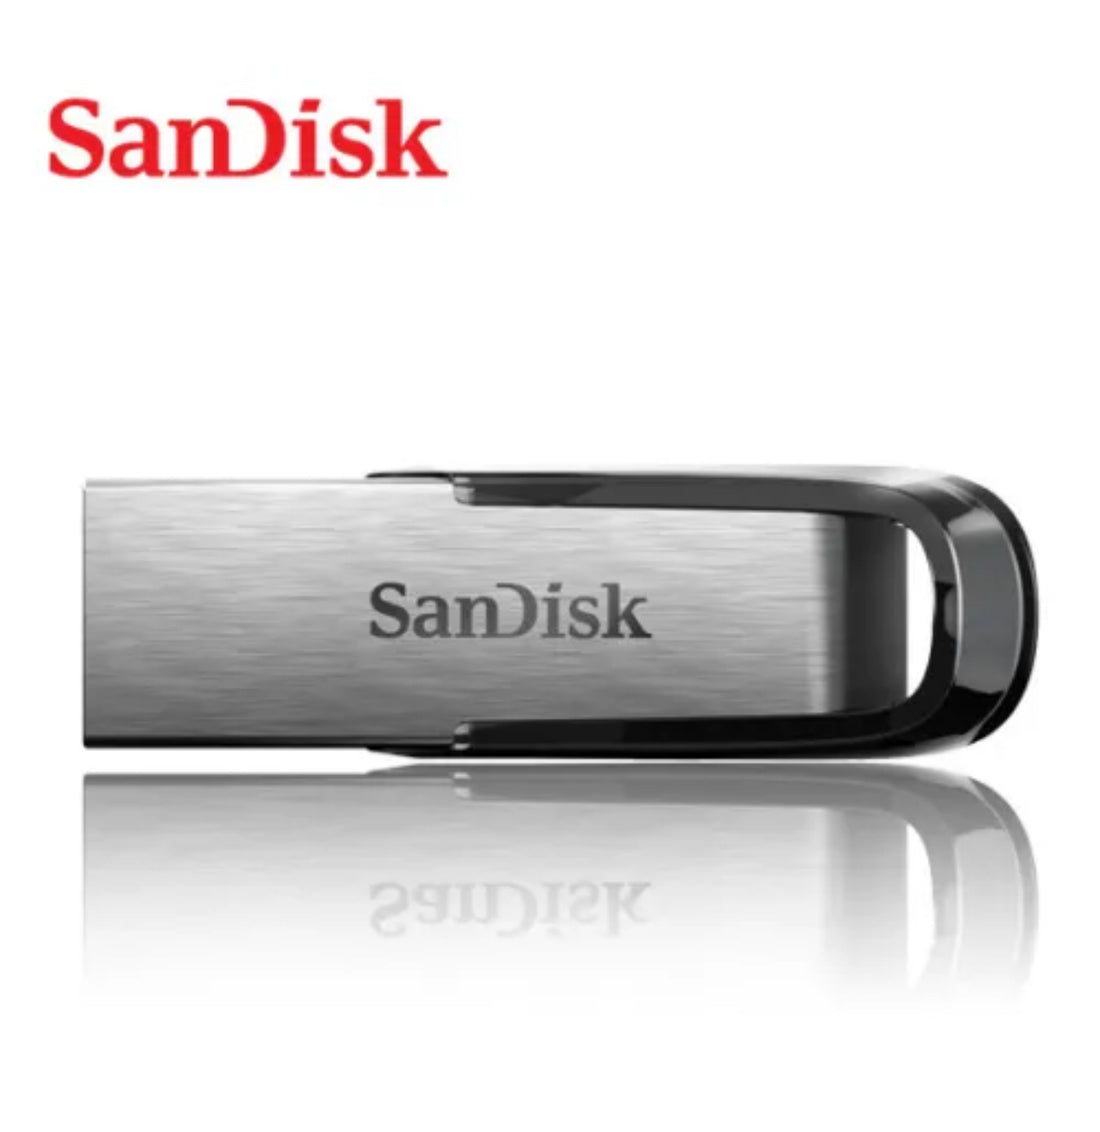 SanDisk 3.0 USB 32GB Flash Drive (Manufacturer Refurbished)